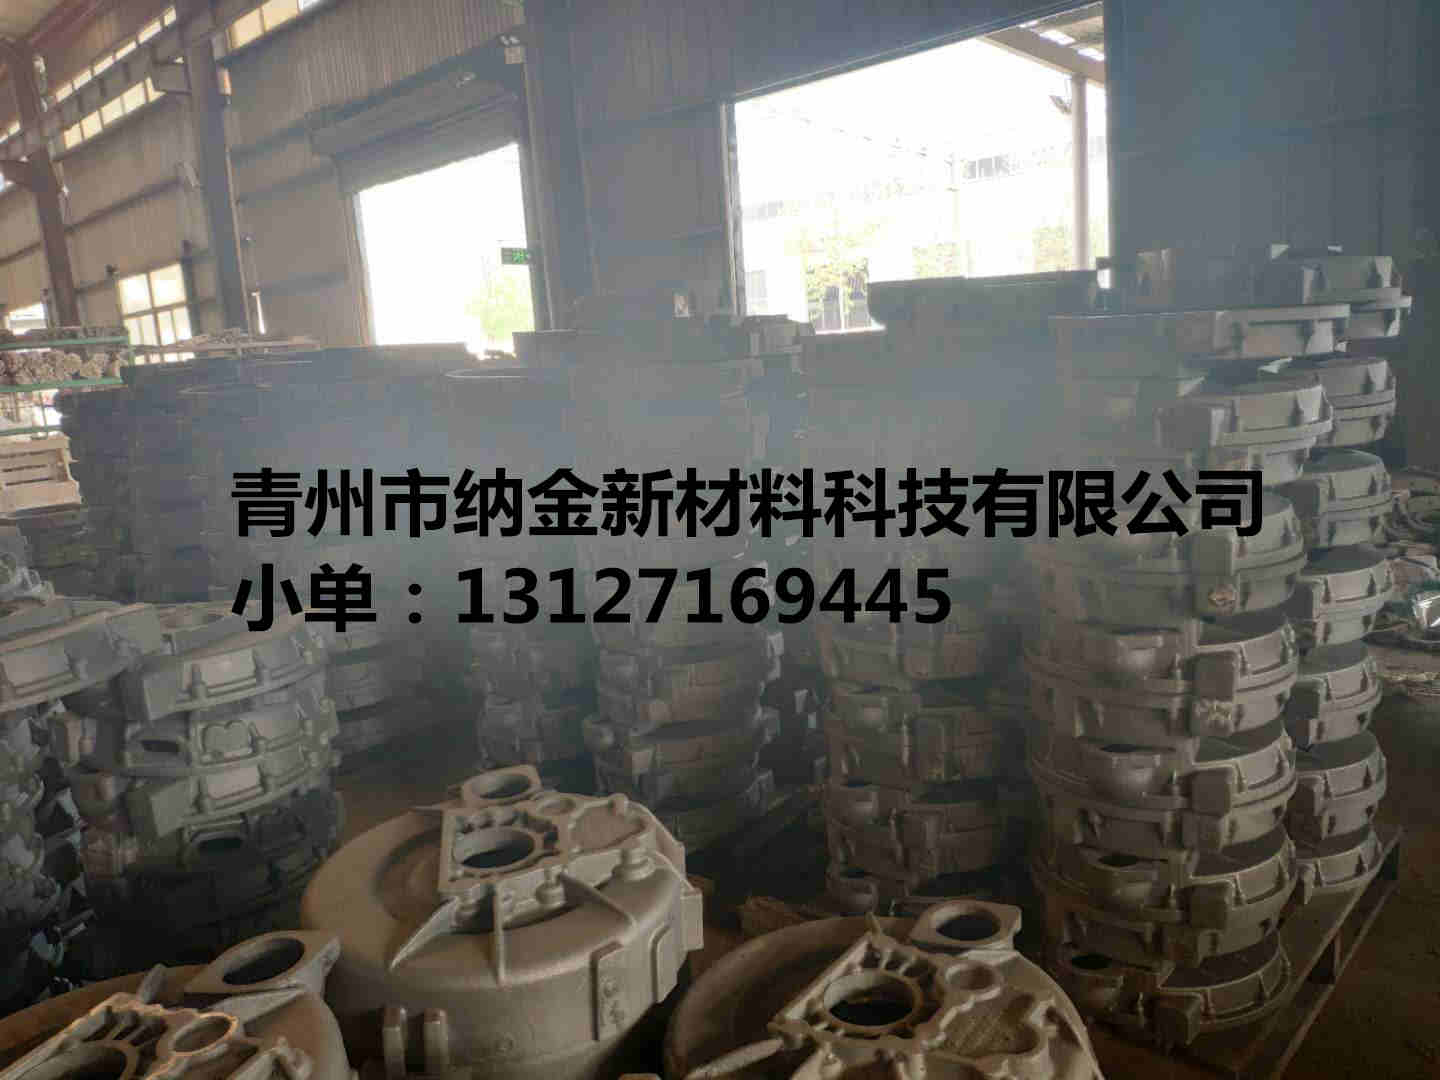 纳金铸造企业铸件加工厂山东潍坊青州厂家生产定做铸造件图片